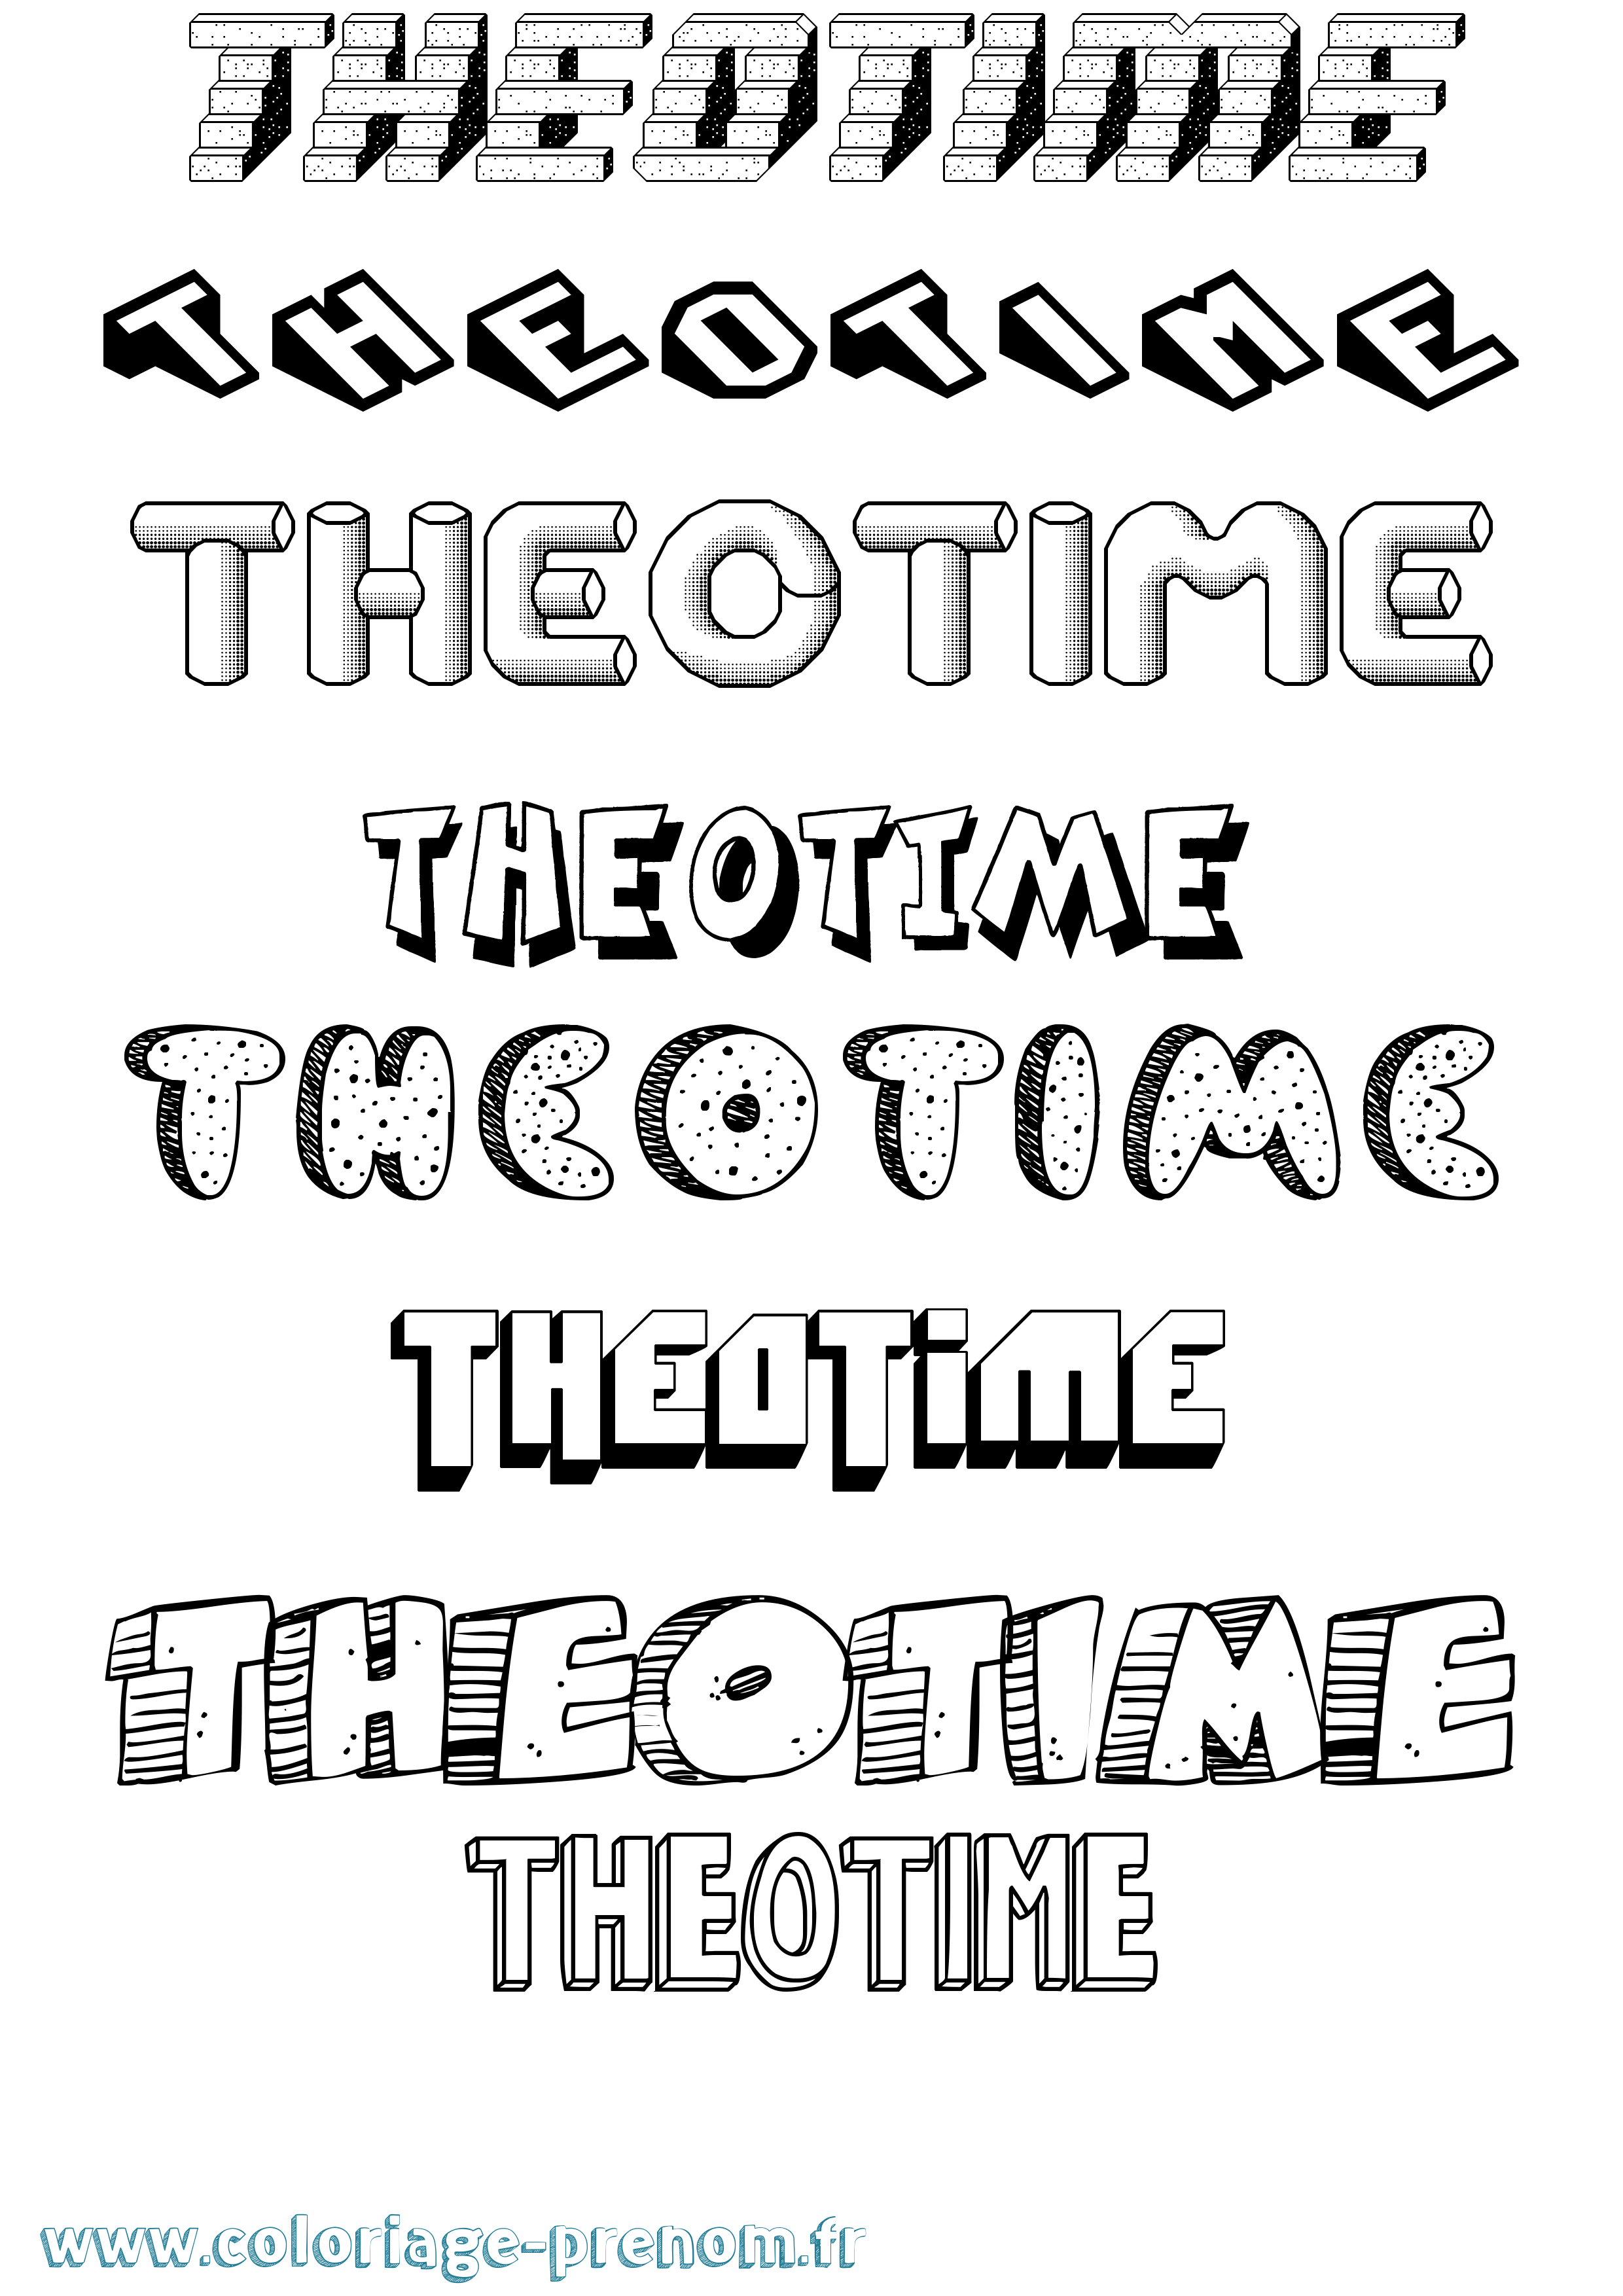 Coloriage prénom Theotime Effet 3D